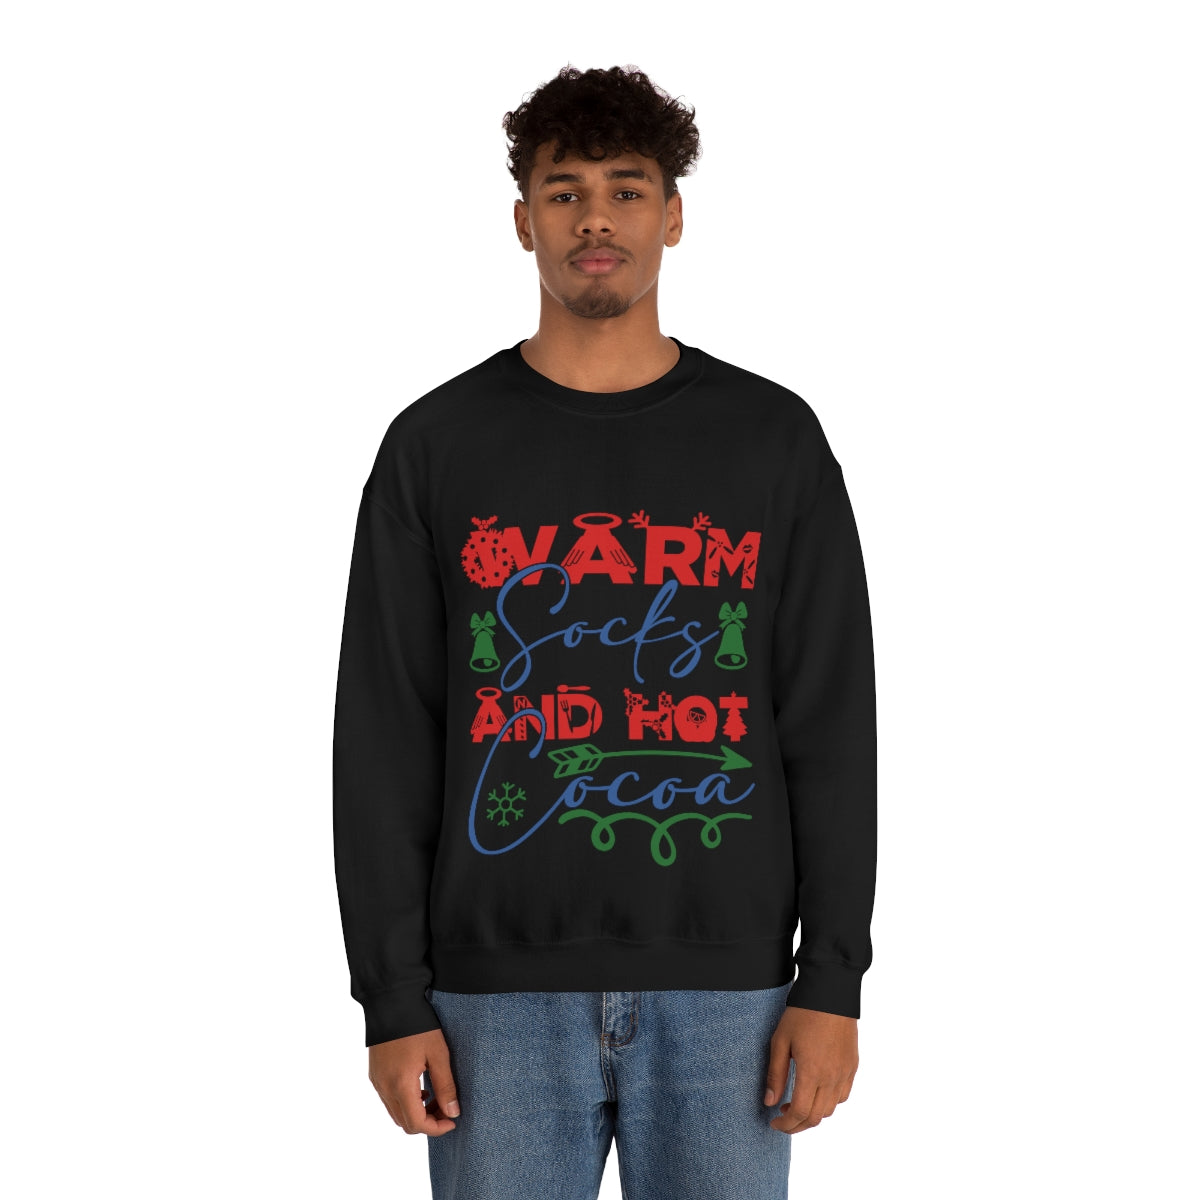 Merry Christmas Unisex Sweatshirts , Sweatshirt , Women Sweatshirt , Men Sweatshirt ,Crewneck Sweatshirt, Warm socks and hot cocoa Printify